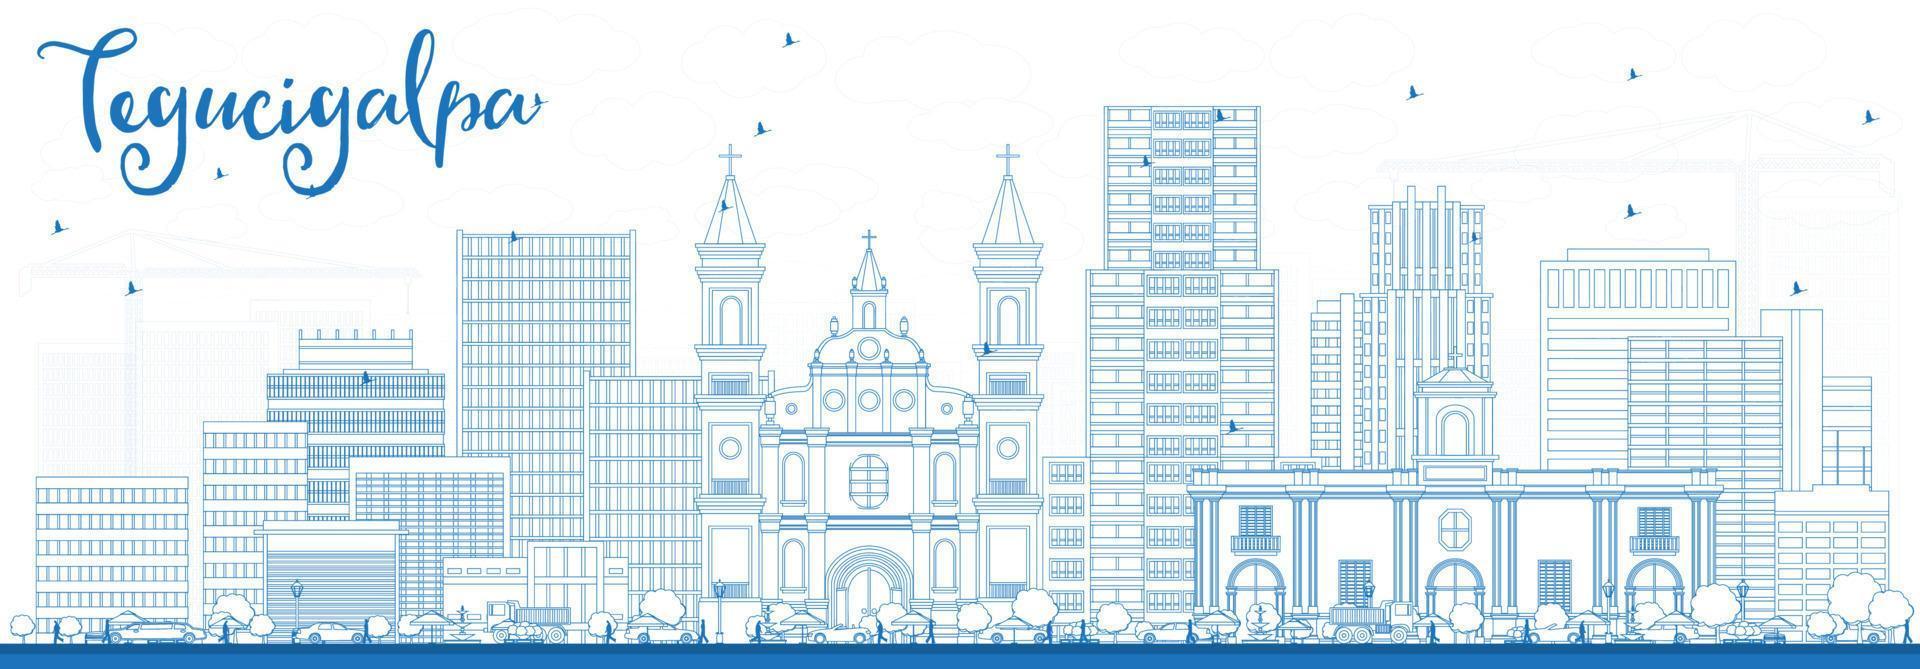 delinear el horizonte de tegucigalpa con edificios azules. vector